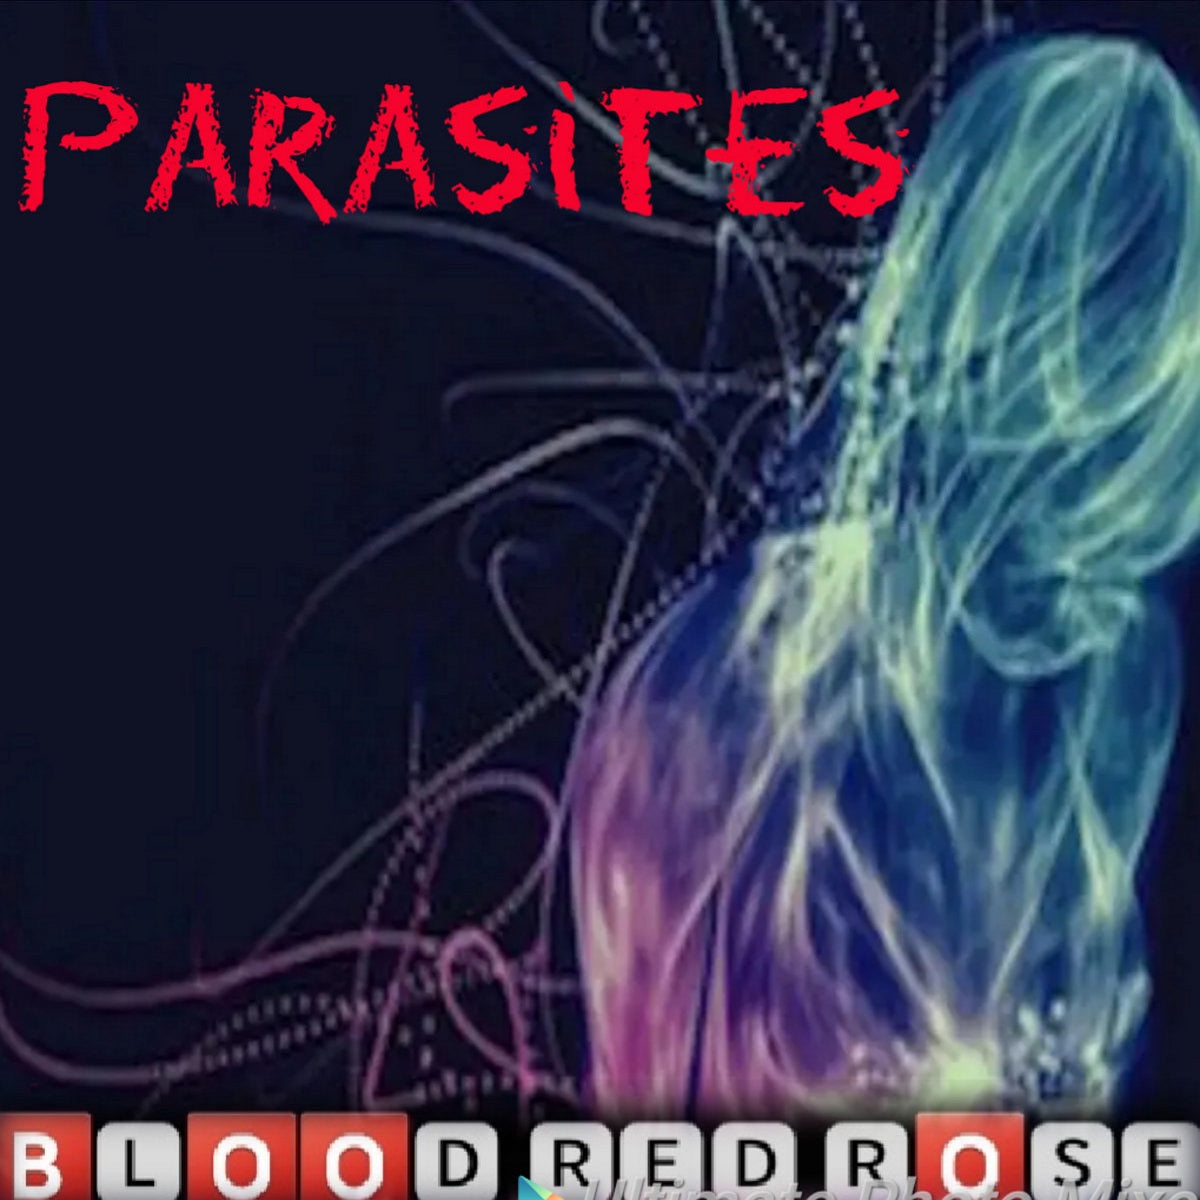 Blood Red Rose – ‘Parasites’